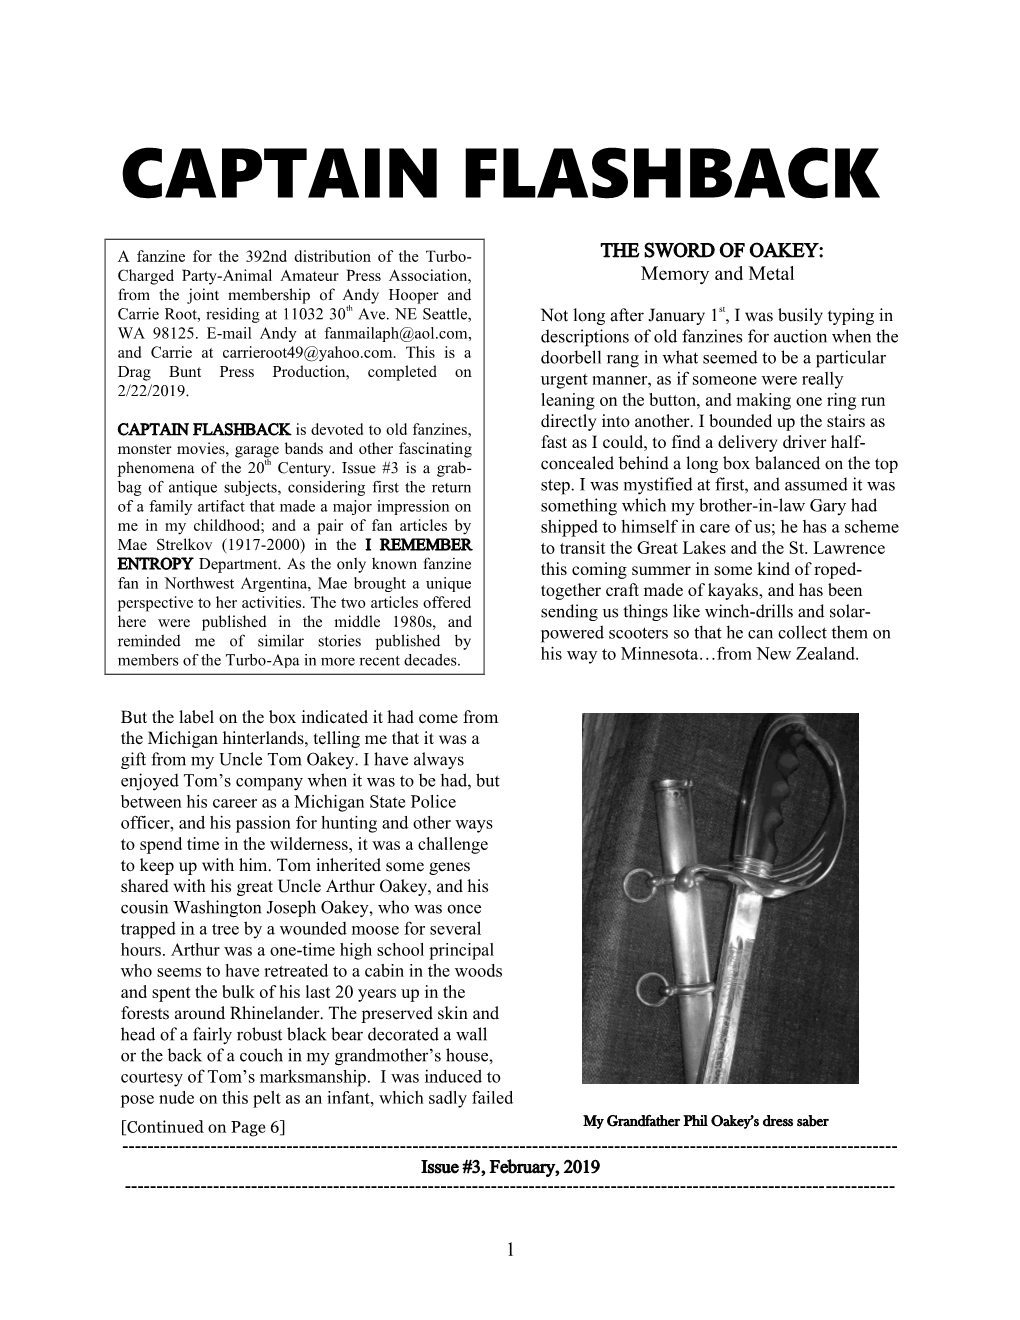 Captain Flashback #3